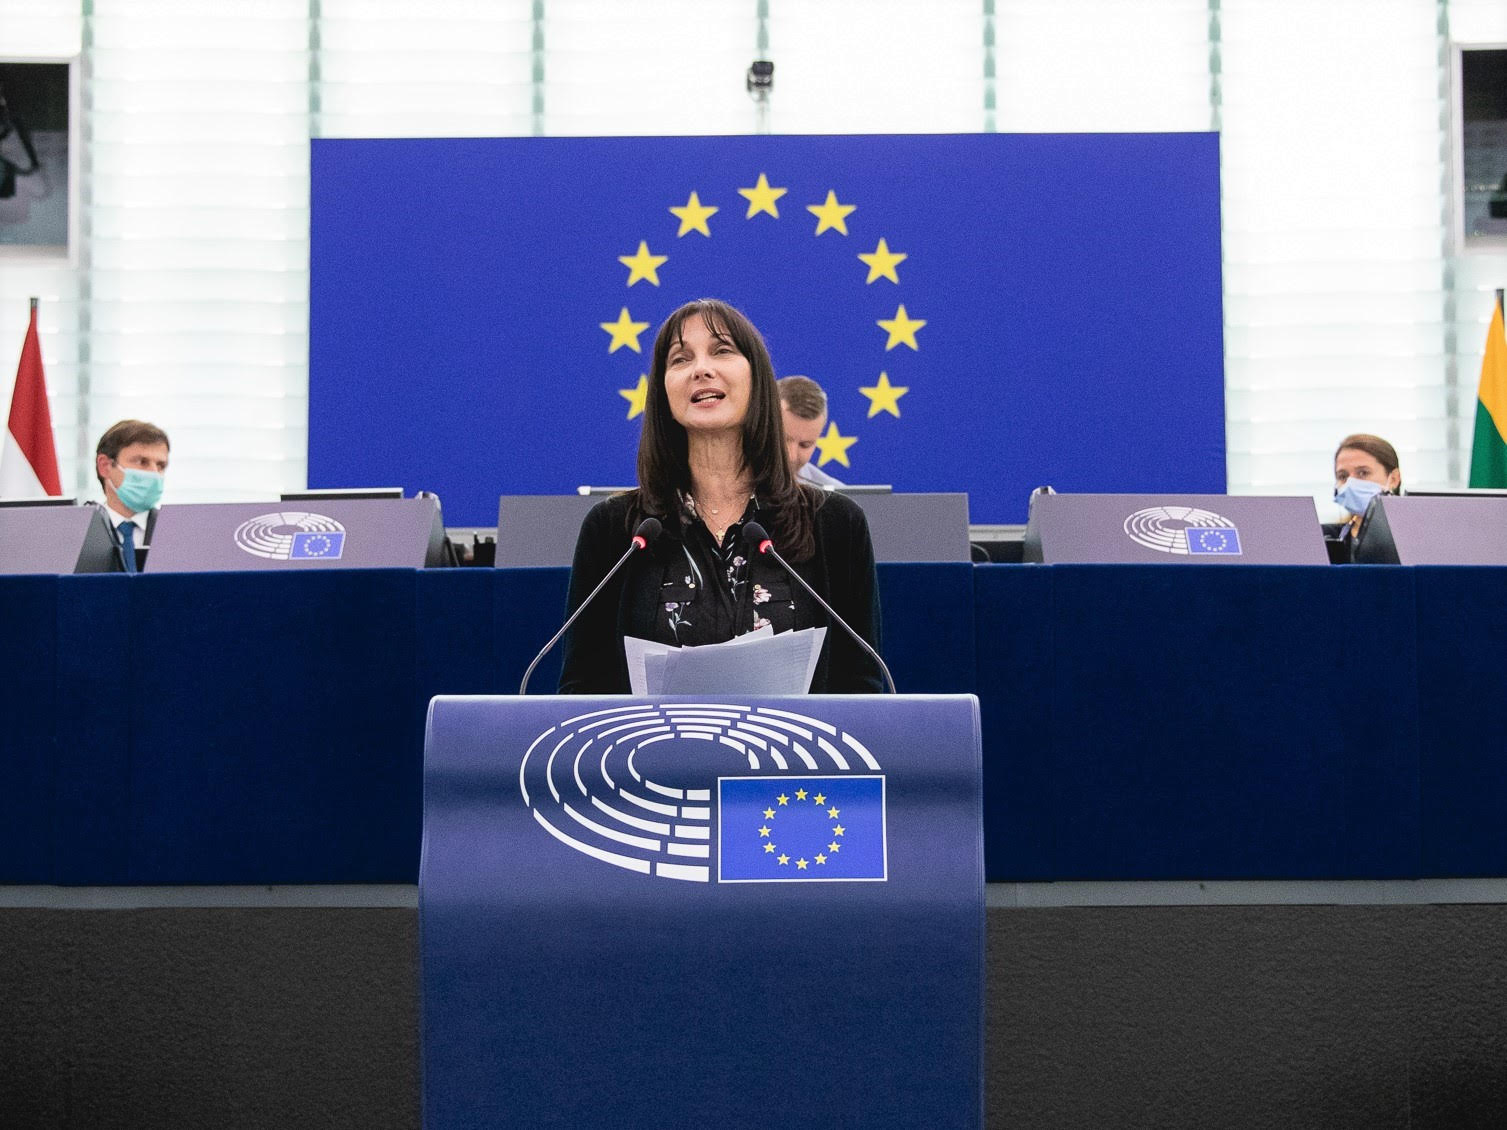 Με συνυπογραφή Κουντουρά η επιστολή του Ευρωπαϊκού Λόμπι Γυναικών προς την Κομισιόν για την έκδοση φιλόδοξης οδηγίας τερματισμού της έμφυλης βίας στην ΕΕ